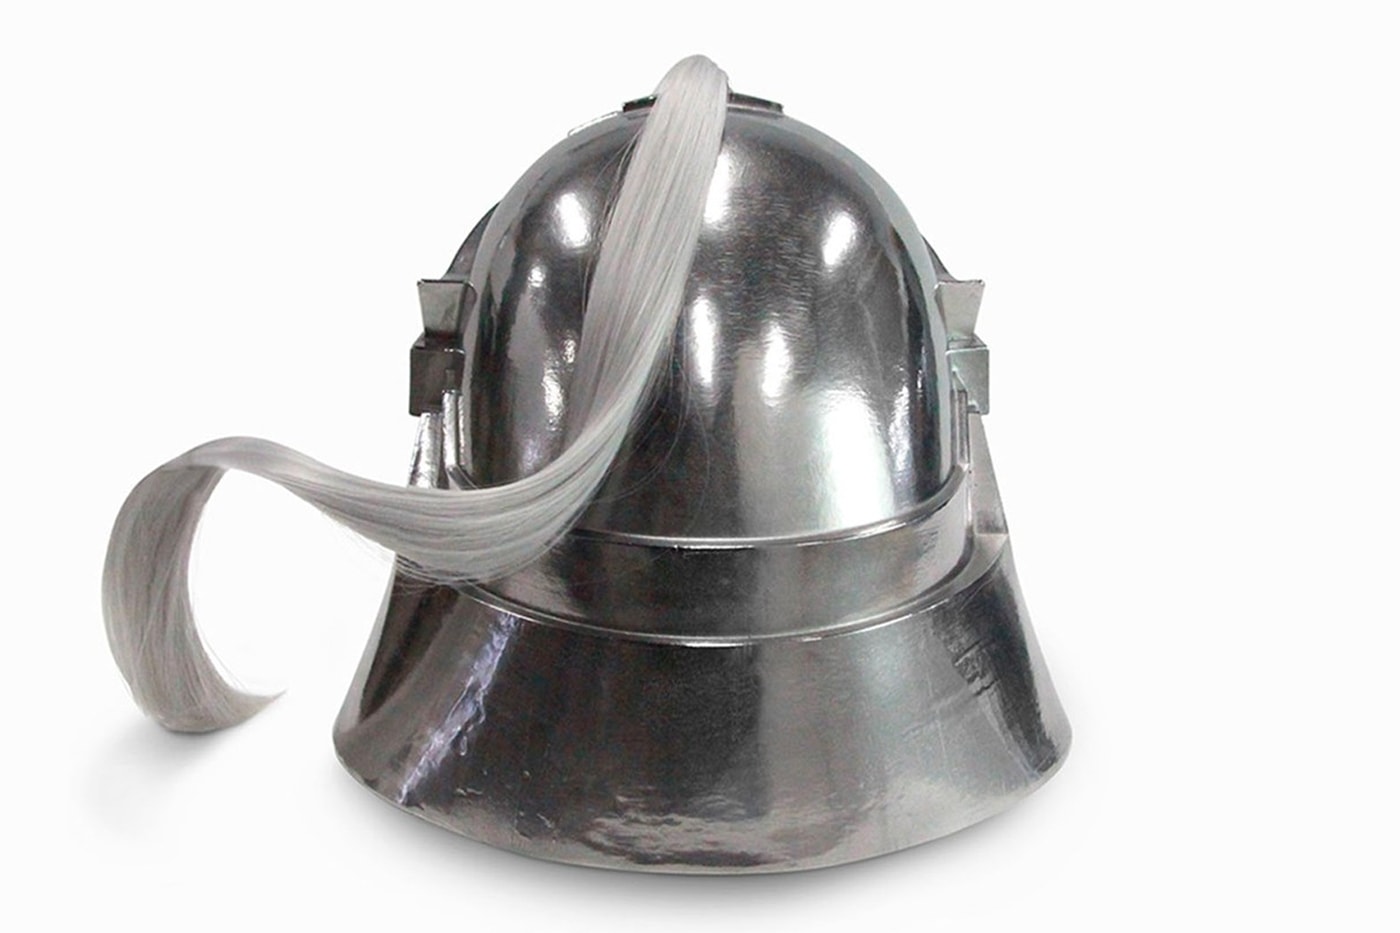 '강철의 연금술사' 알폰스 엘릭의 헬멧이 실제 사이즈로 출시된다, 아이언 팩토리, 금속, 메탈